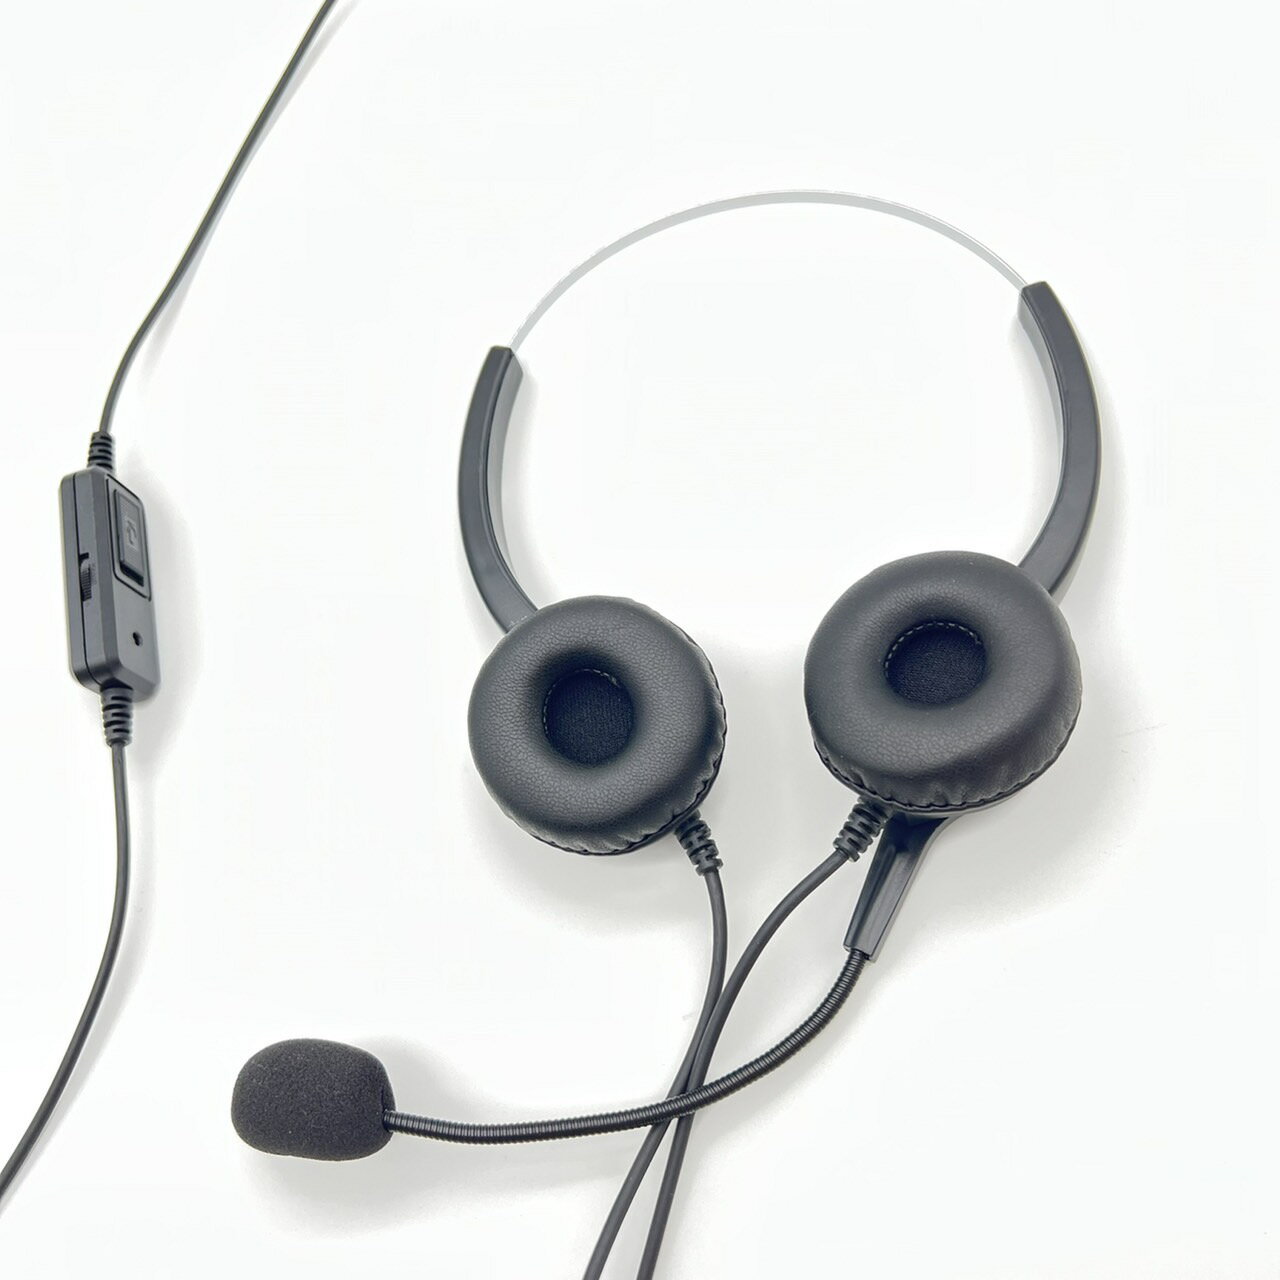 阿爾卡特 ALCATEL 8018 立體聲保證清晰 雙耳耳機麥克風 含調音靜音開關